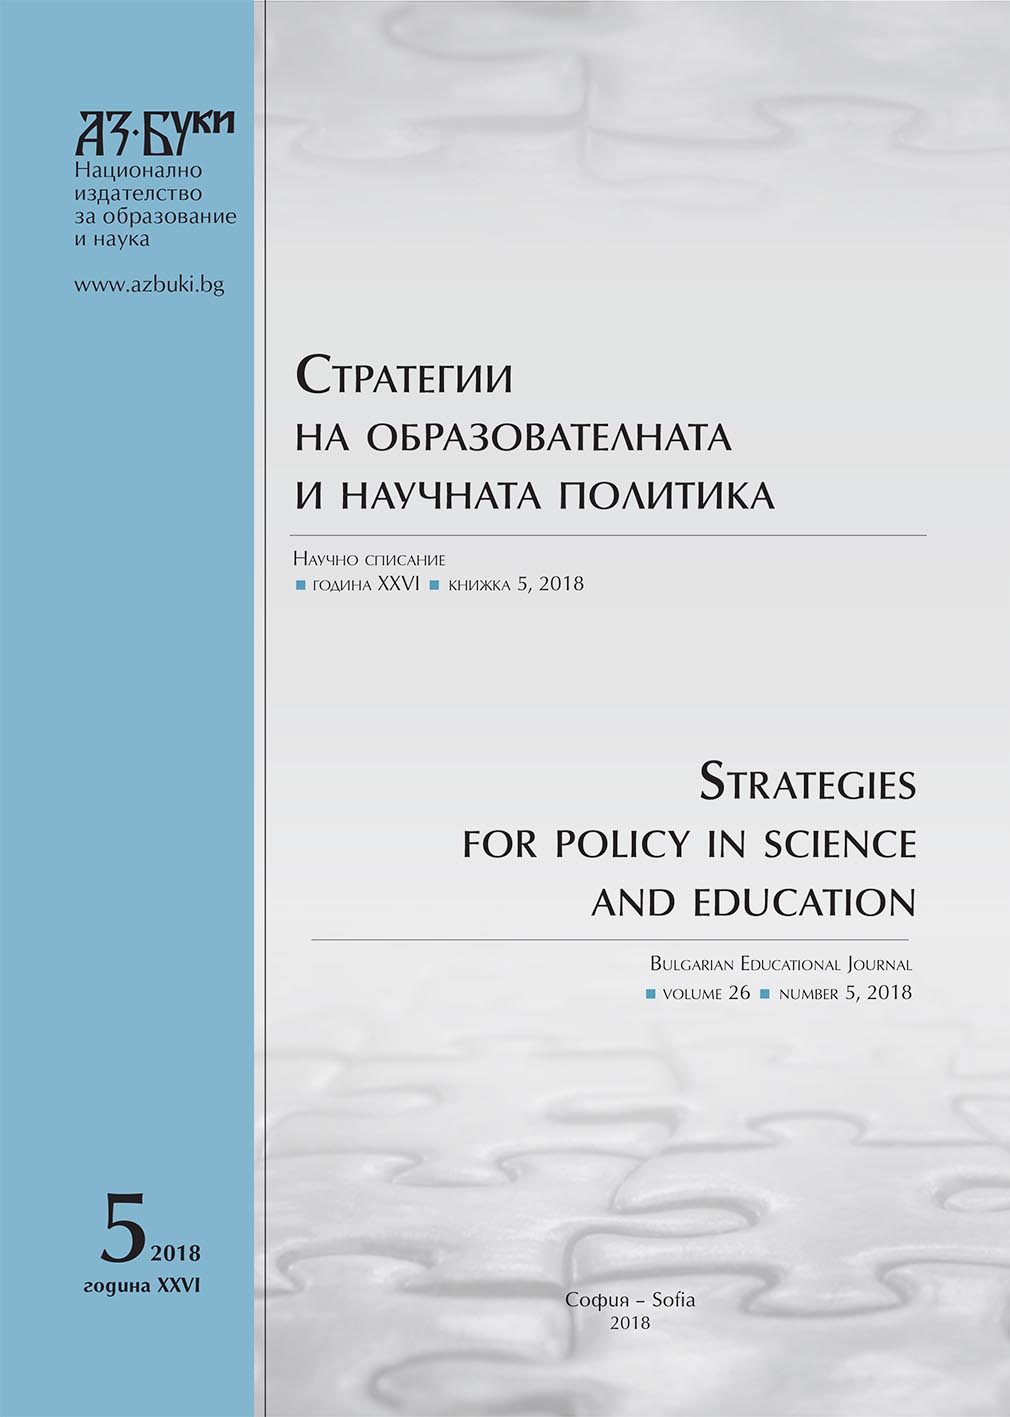 A New Award for Professor Maira Kabakova Cover Image